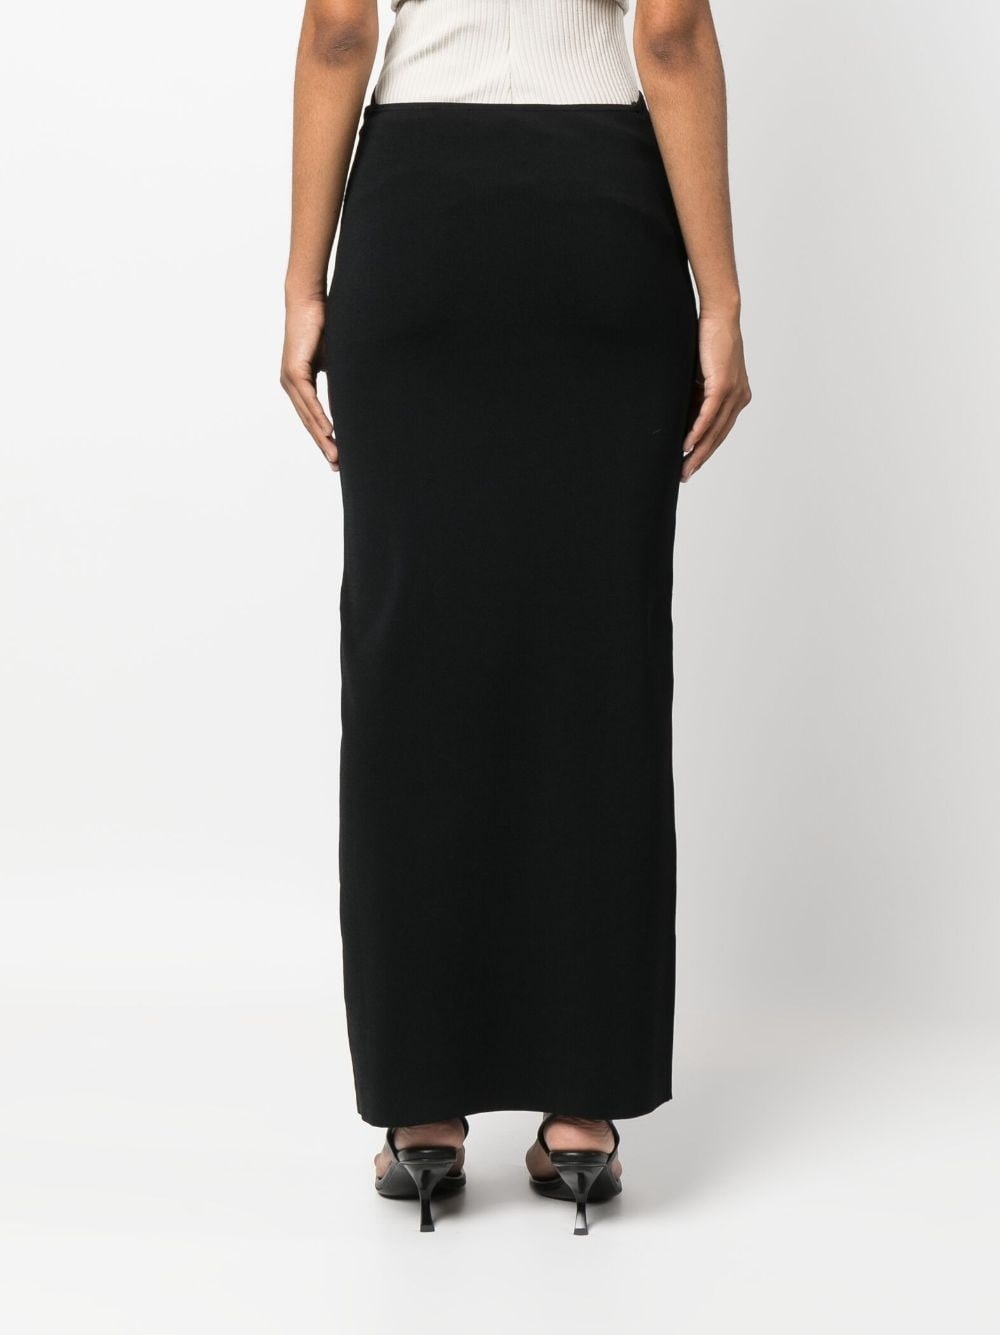 Maparadita high-waist skirt - 4